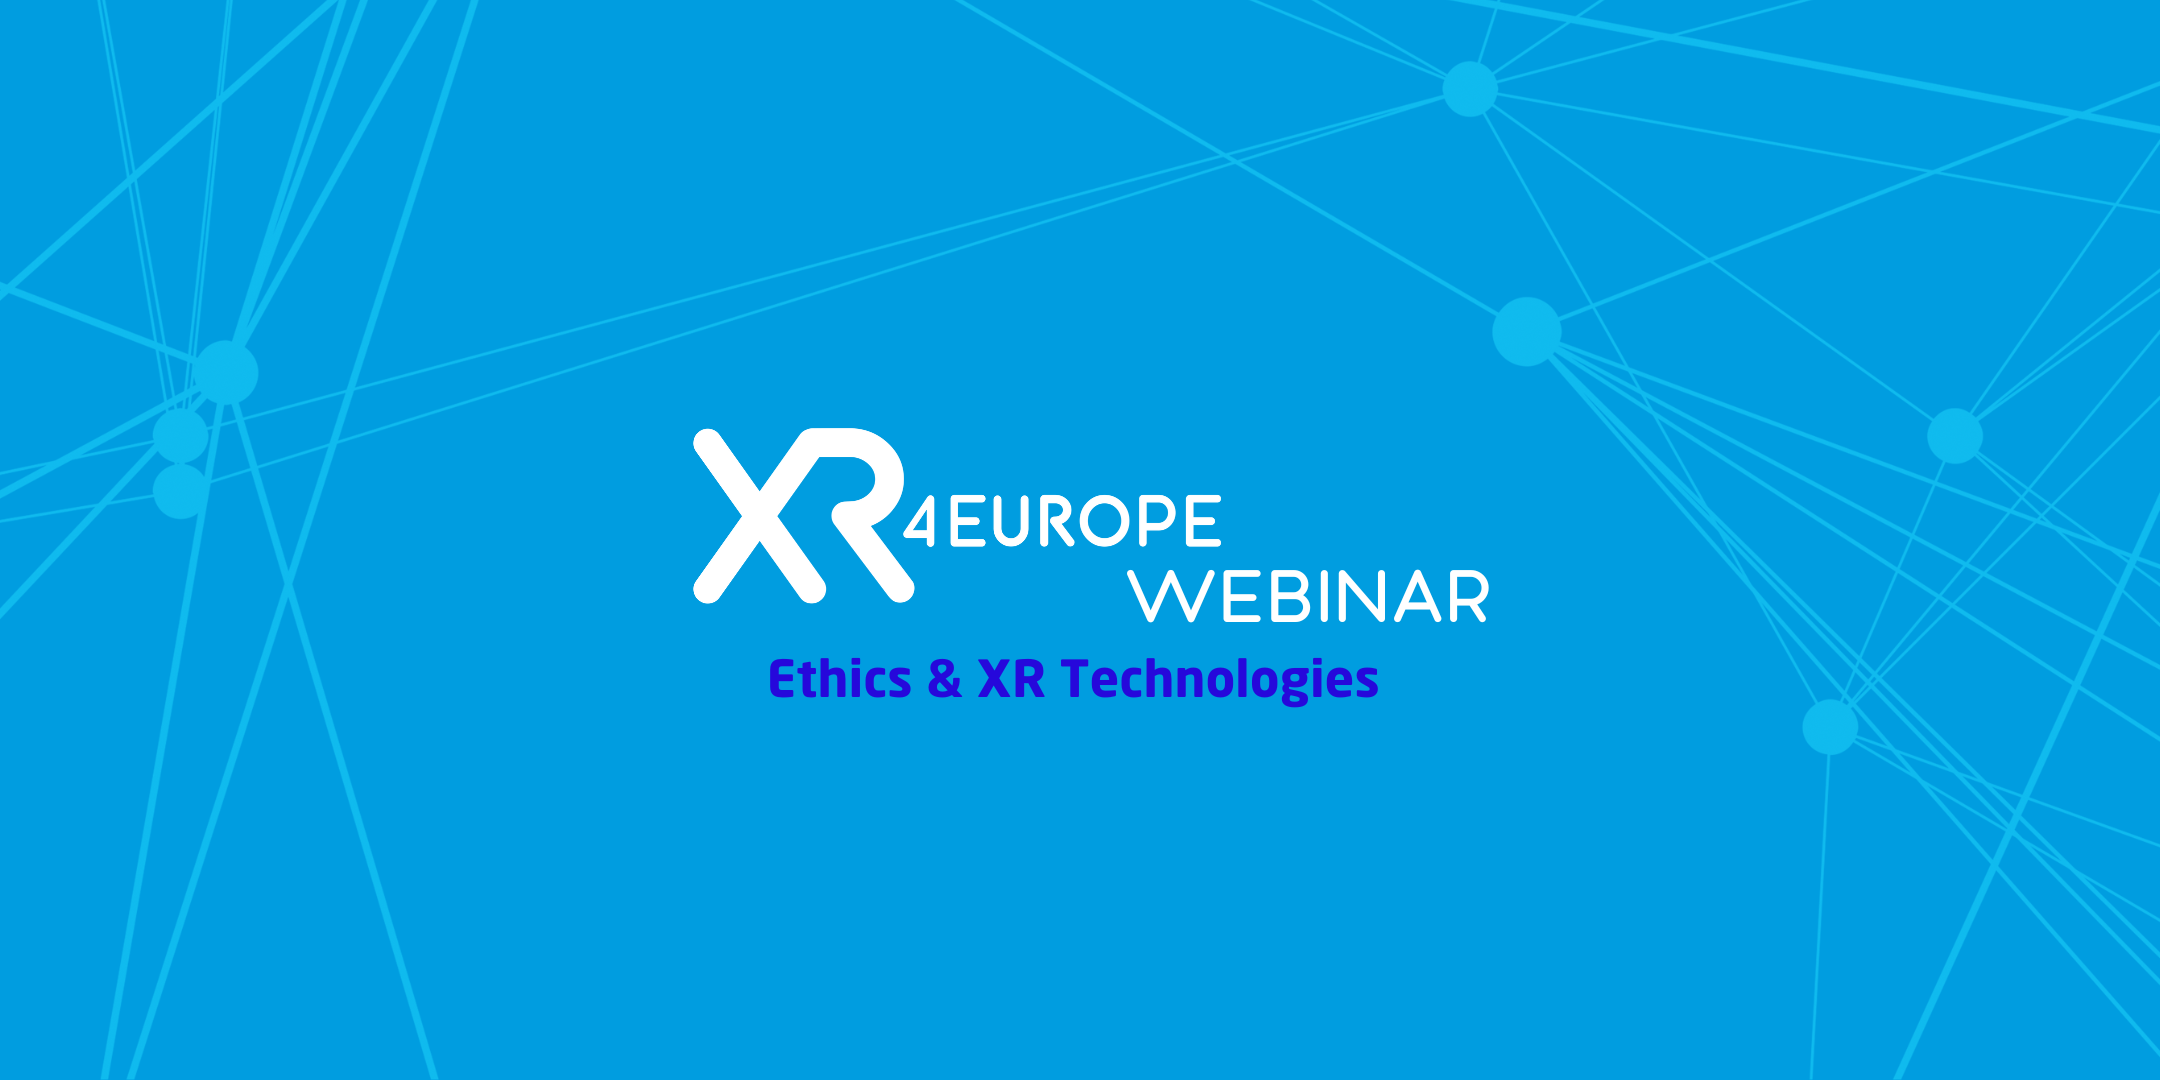 Webinar on Ethics & XR Technologies